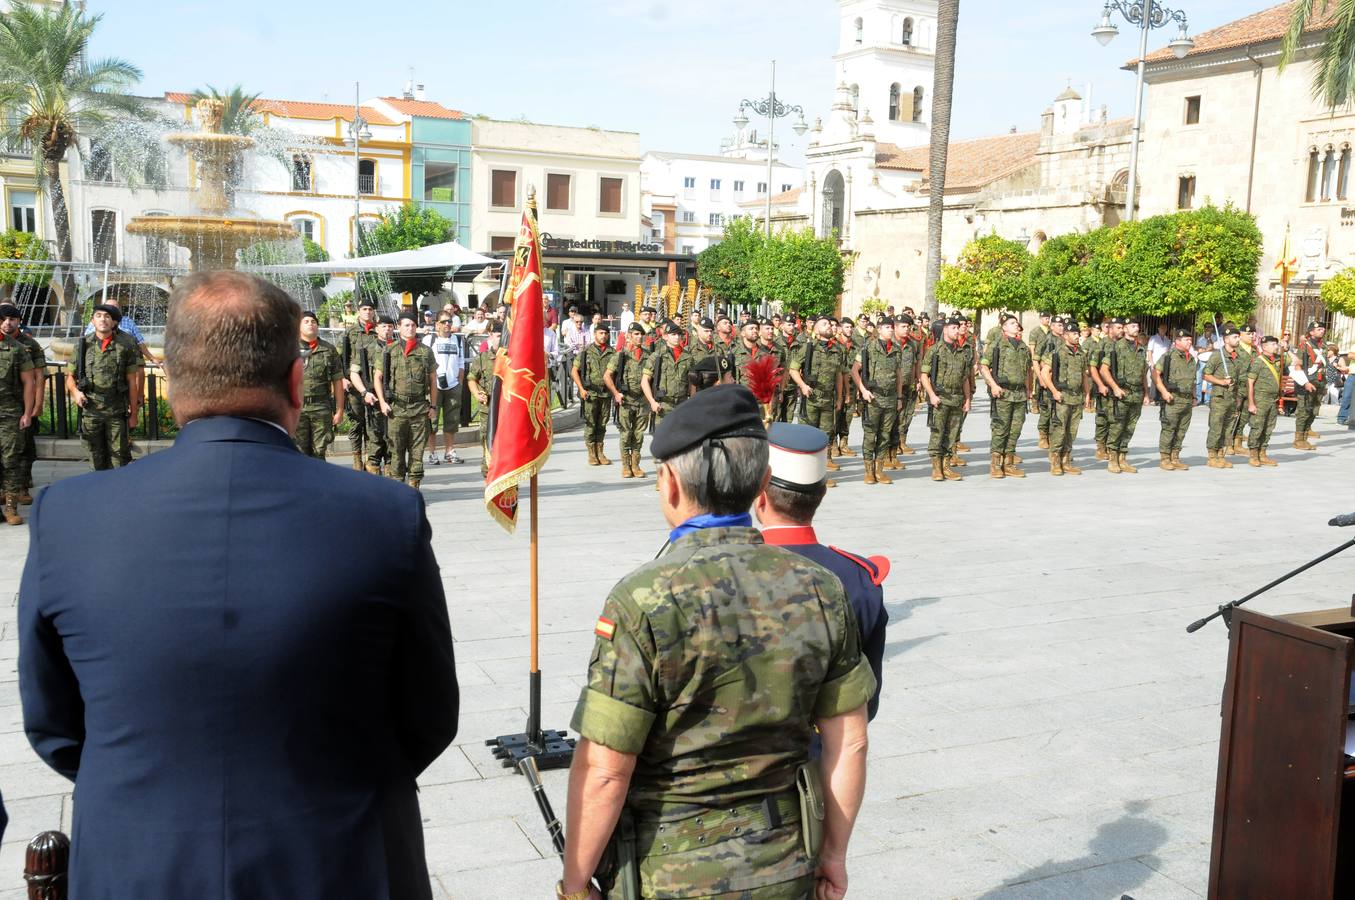 Alrededor de 700 militares de la Brigada de Infantería Mecanizada (BRIMZ) "Extremadura XI" permanecerán en misiones en el exterior a partir de noviembre, ya que a los 300 que actualmente están destinados en Letonia se sumarán los más de 400 que partirán hacia Líbano en el penúltimo mes del año.